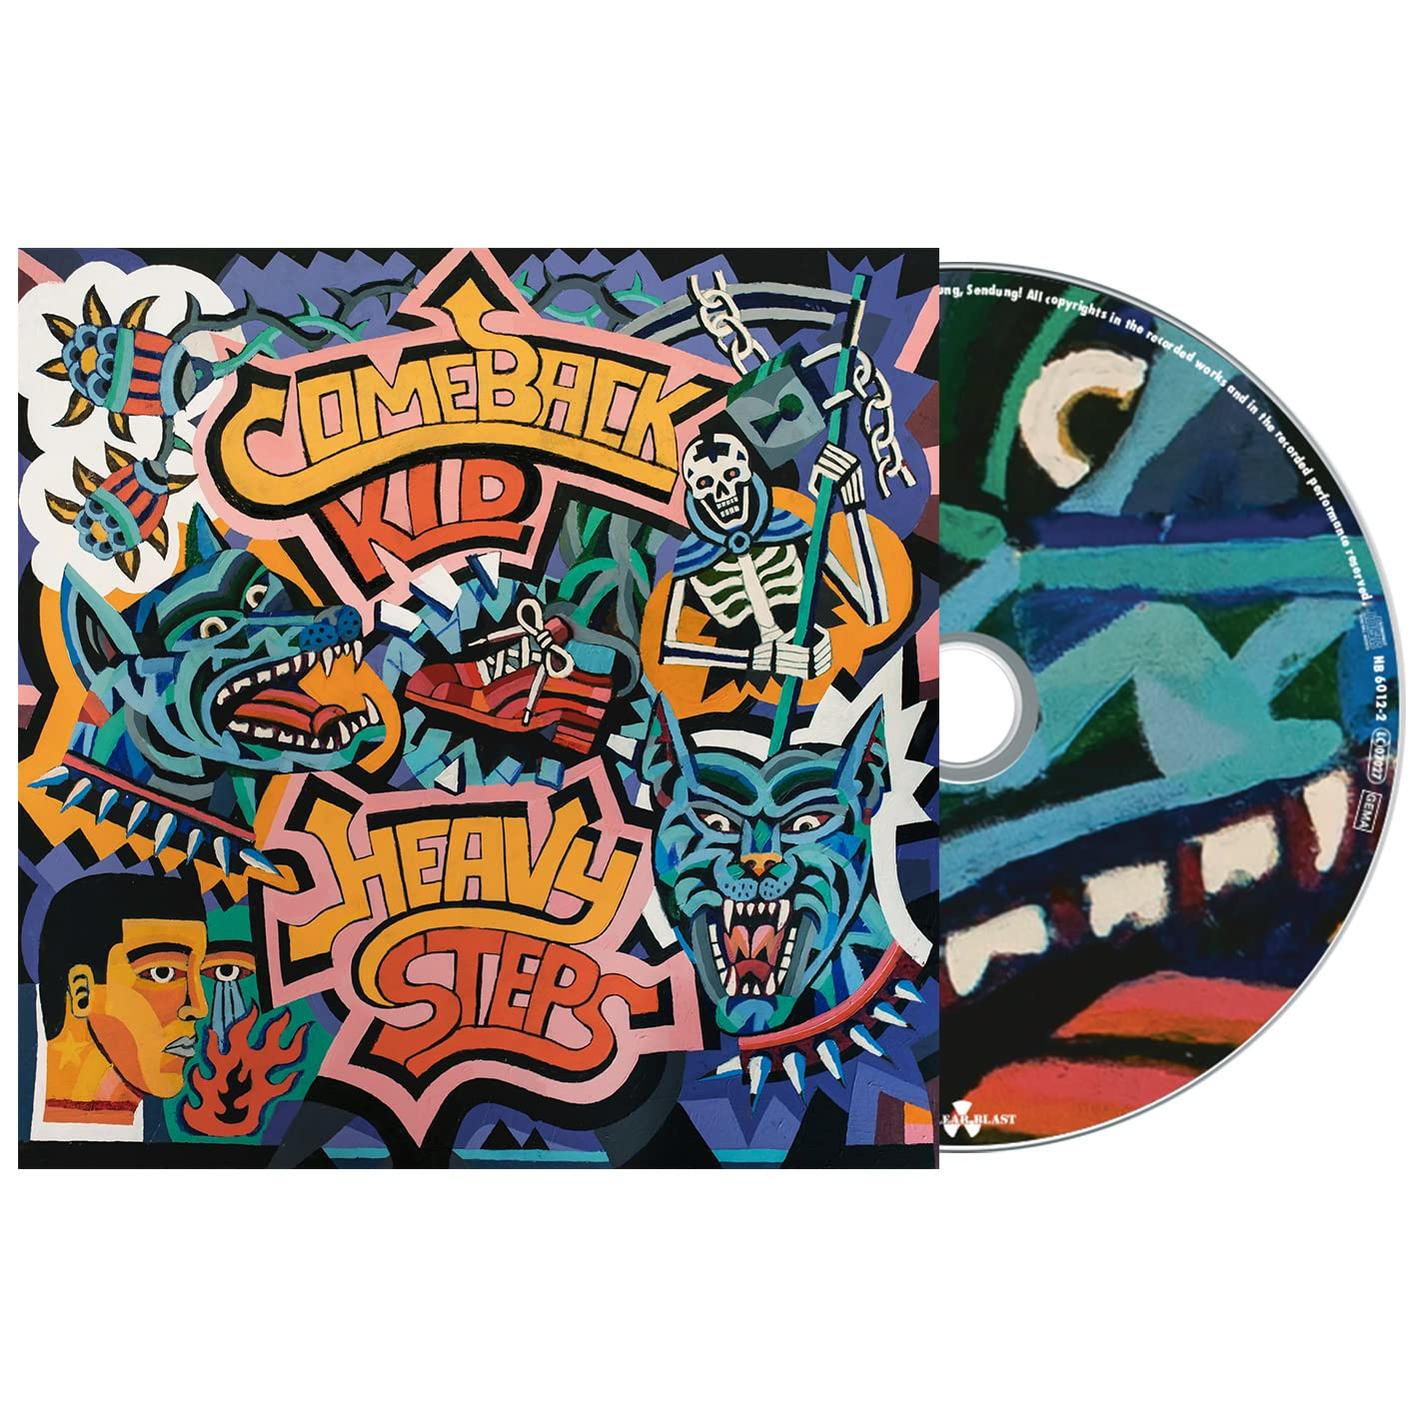 Comeback Kid Heavy in (CD) - Steps - (CD O-card)